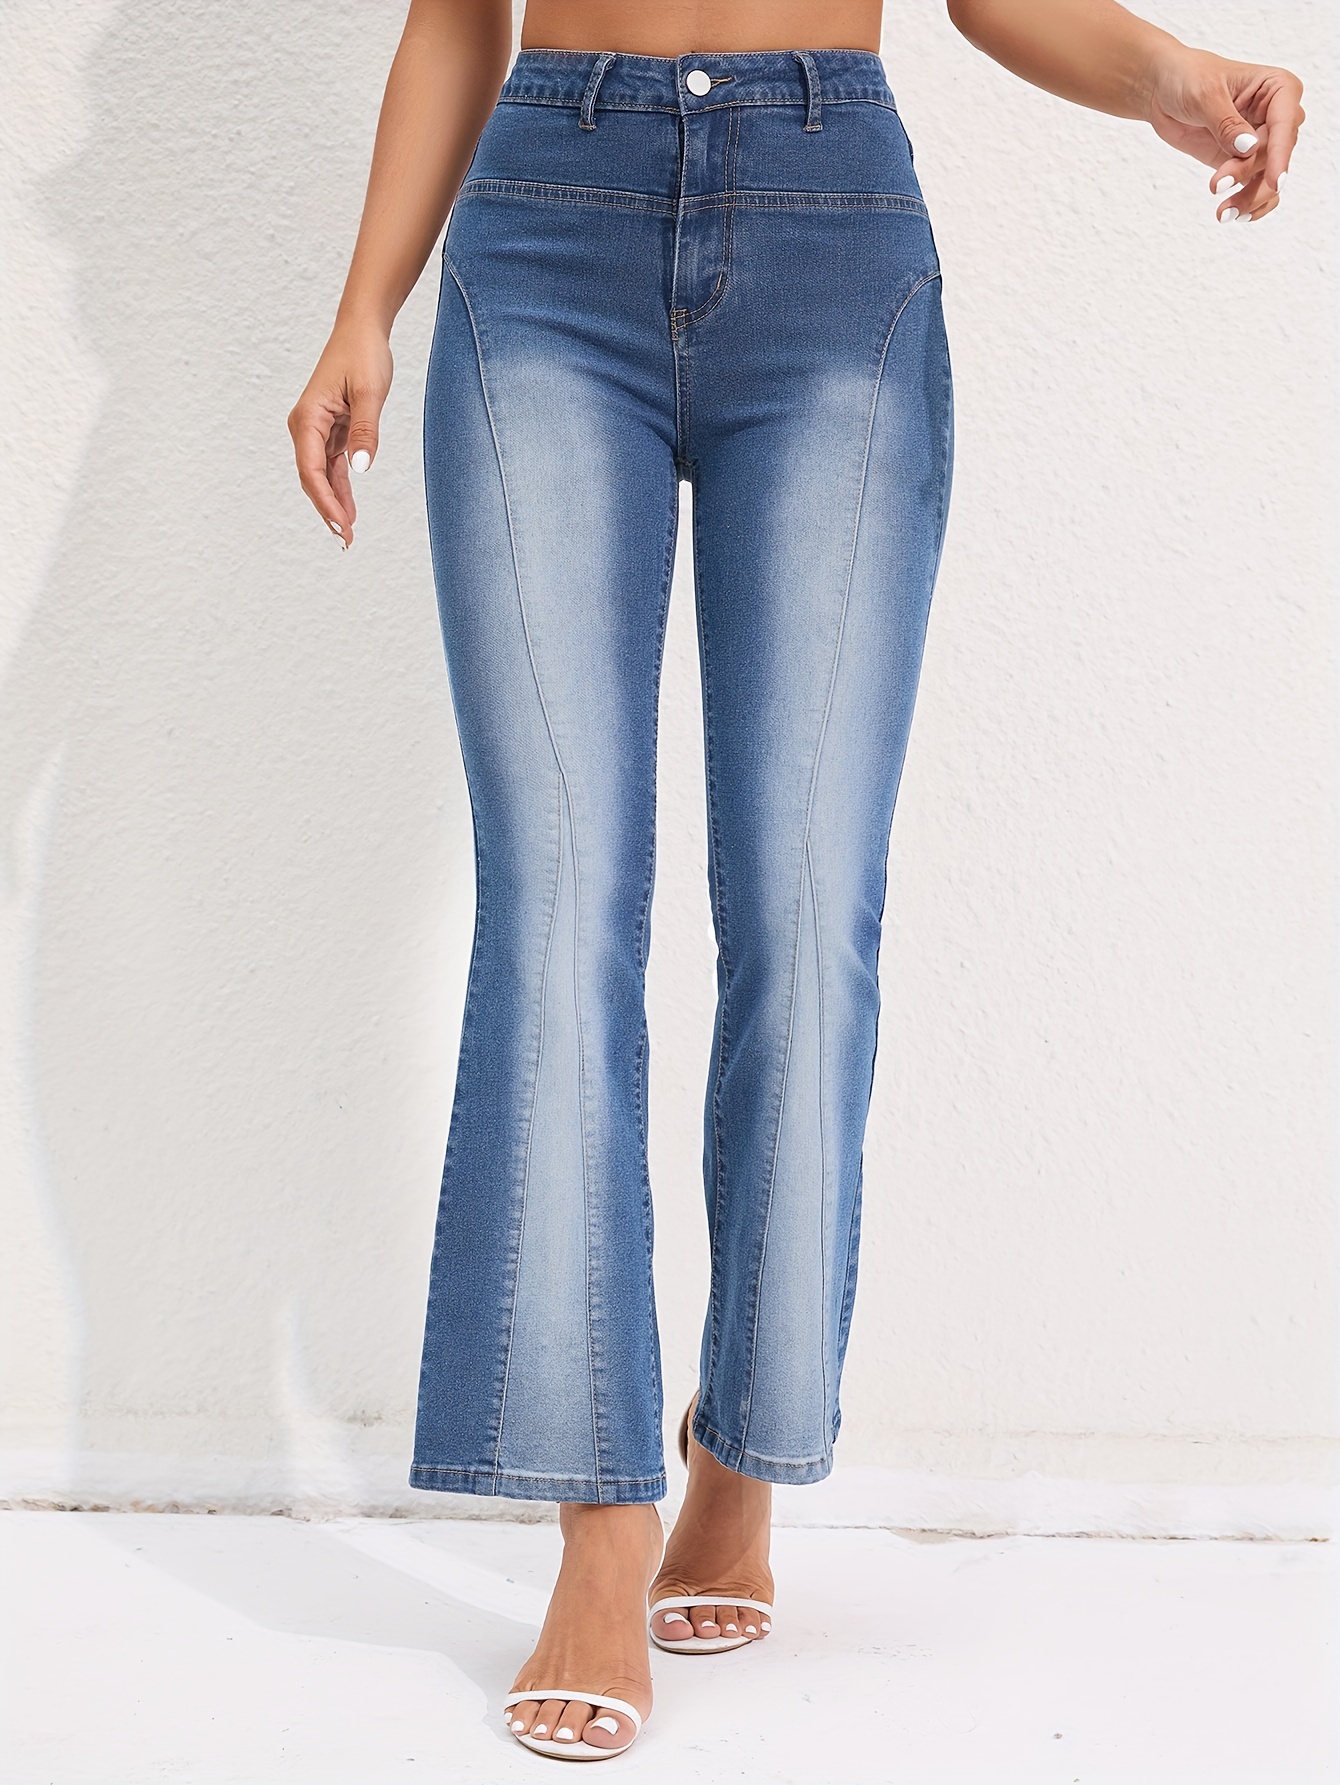 Women's Stretch Jeans, Boot Cut/Hip Brief, Blue, Ausgeblichen